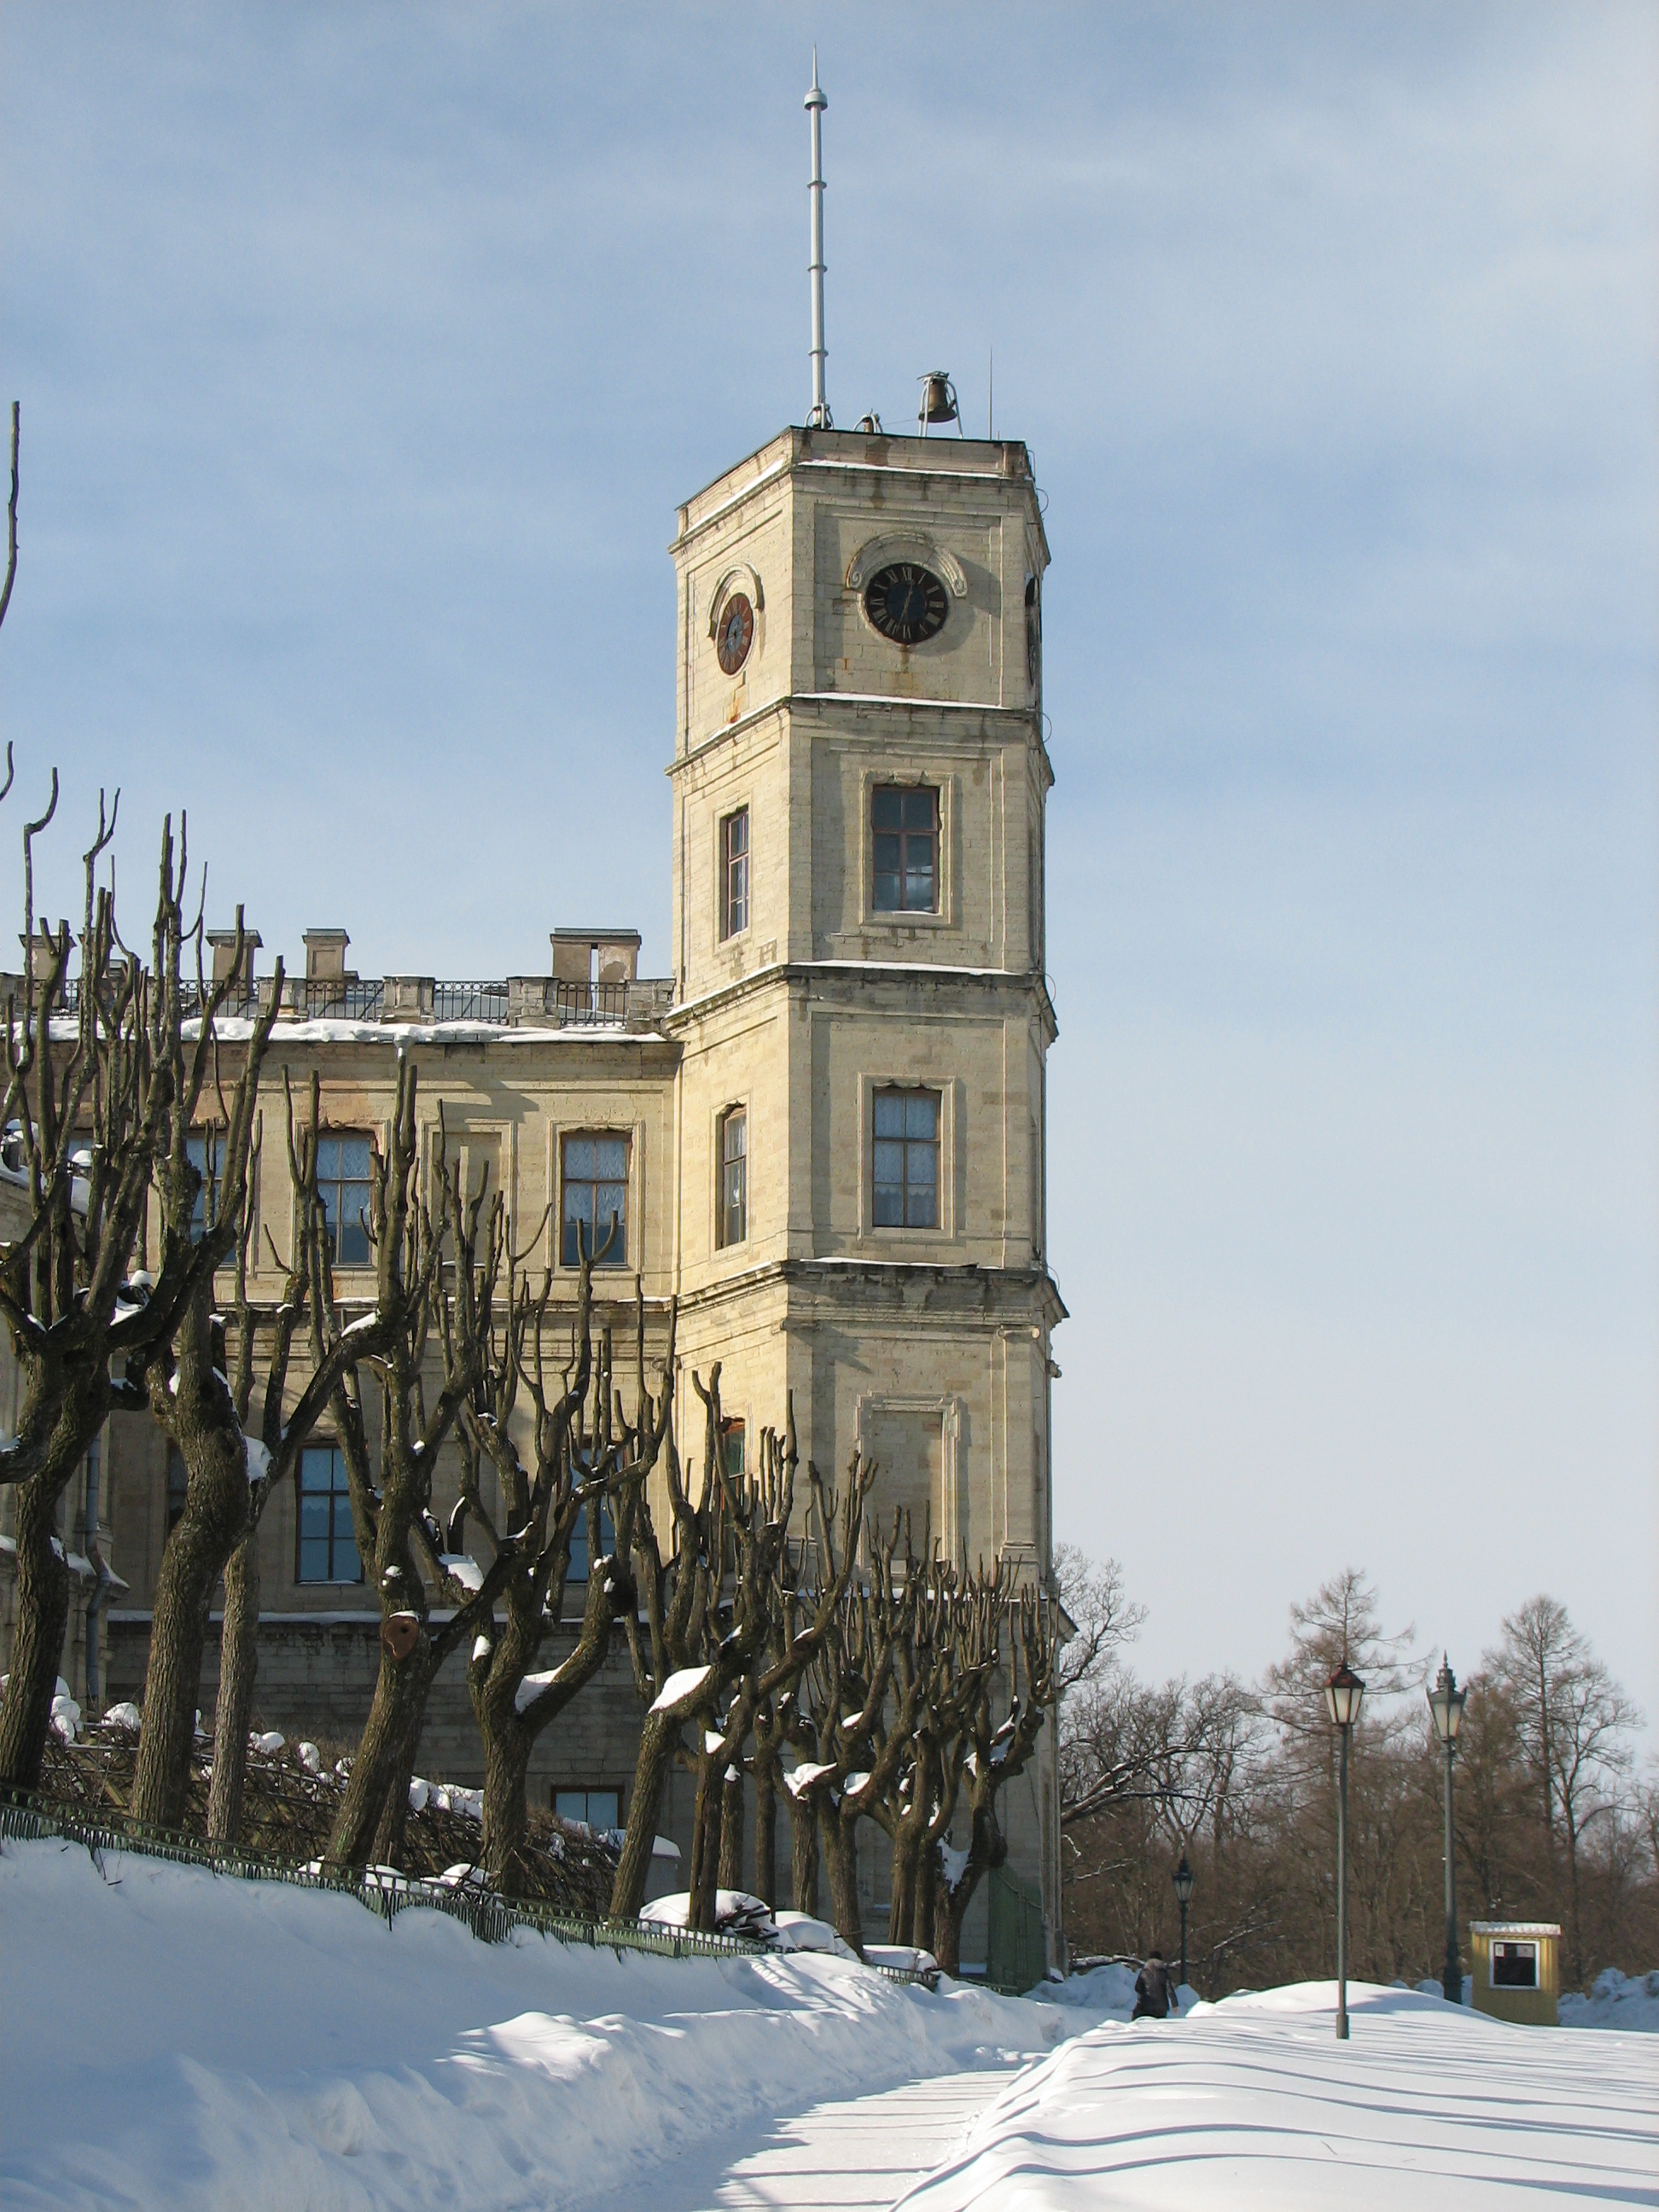 Signal Tower of Gatchina Palace. Winter, 2010